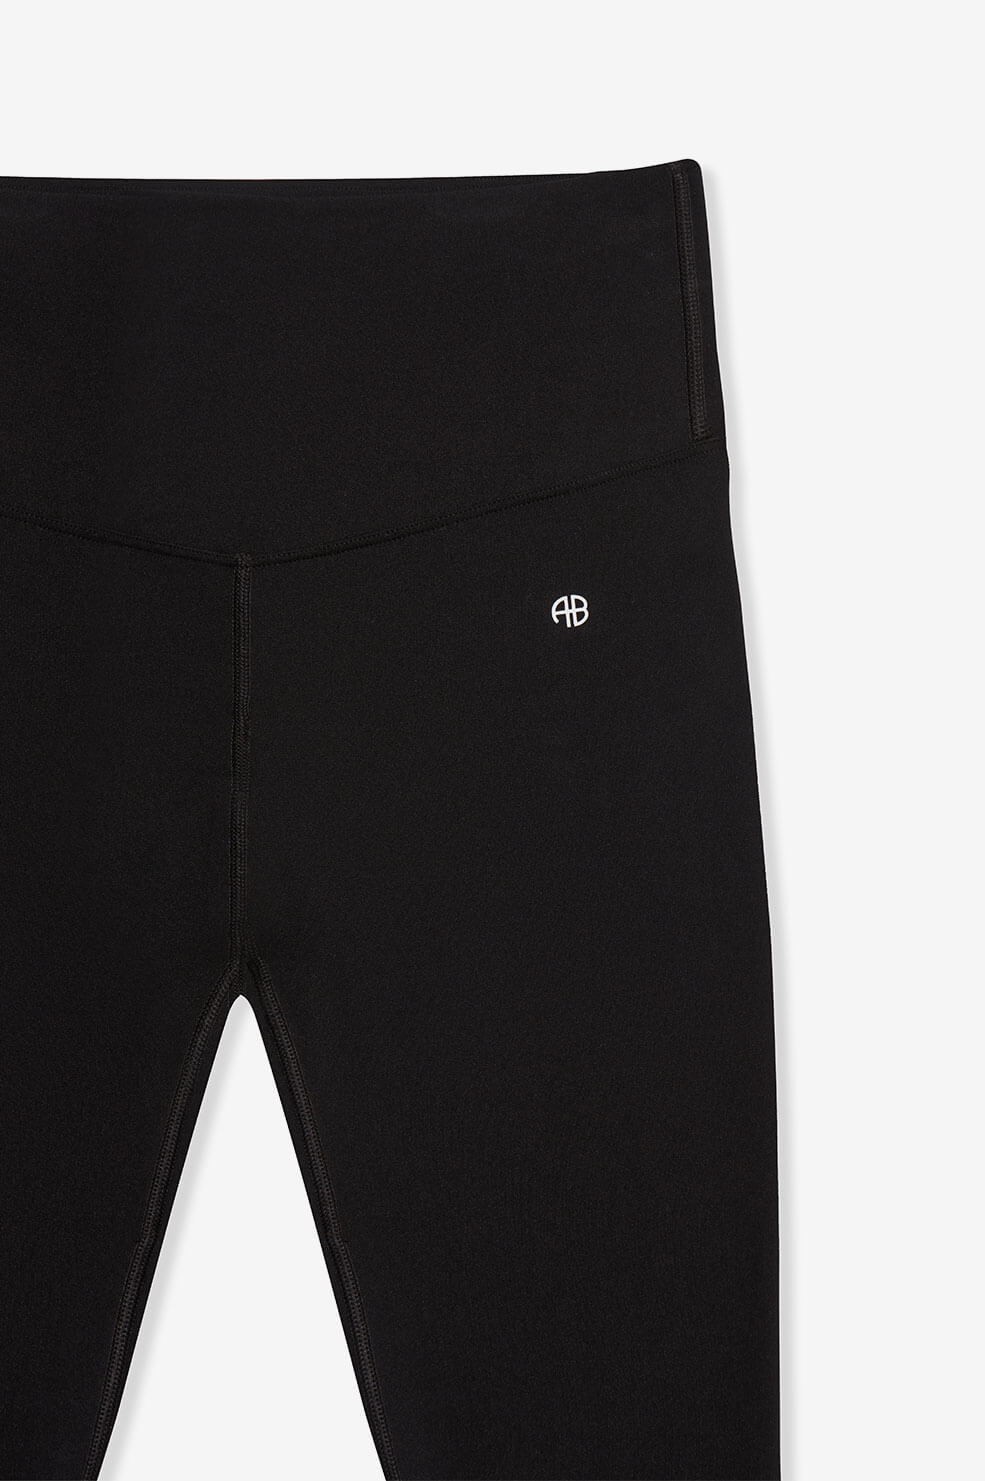 Anine Bing - BLAKE LEGGING BLACK WITH WHITE STRIPE on Designer Wardrobe